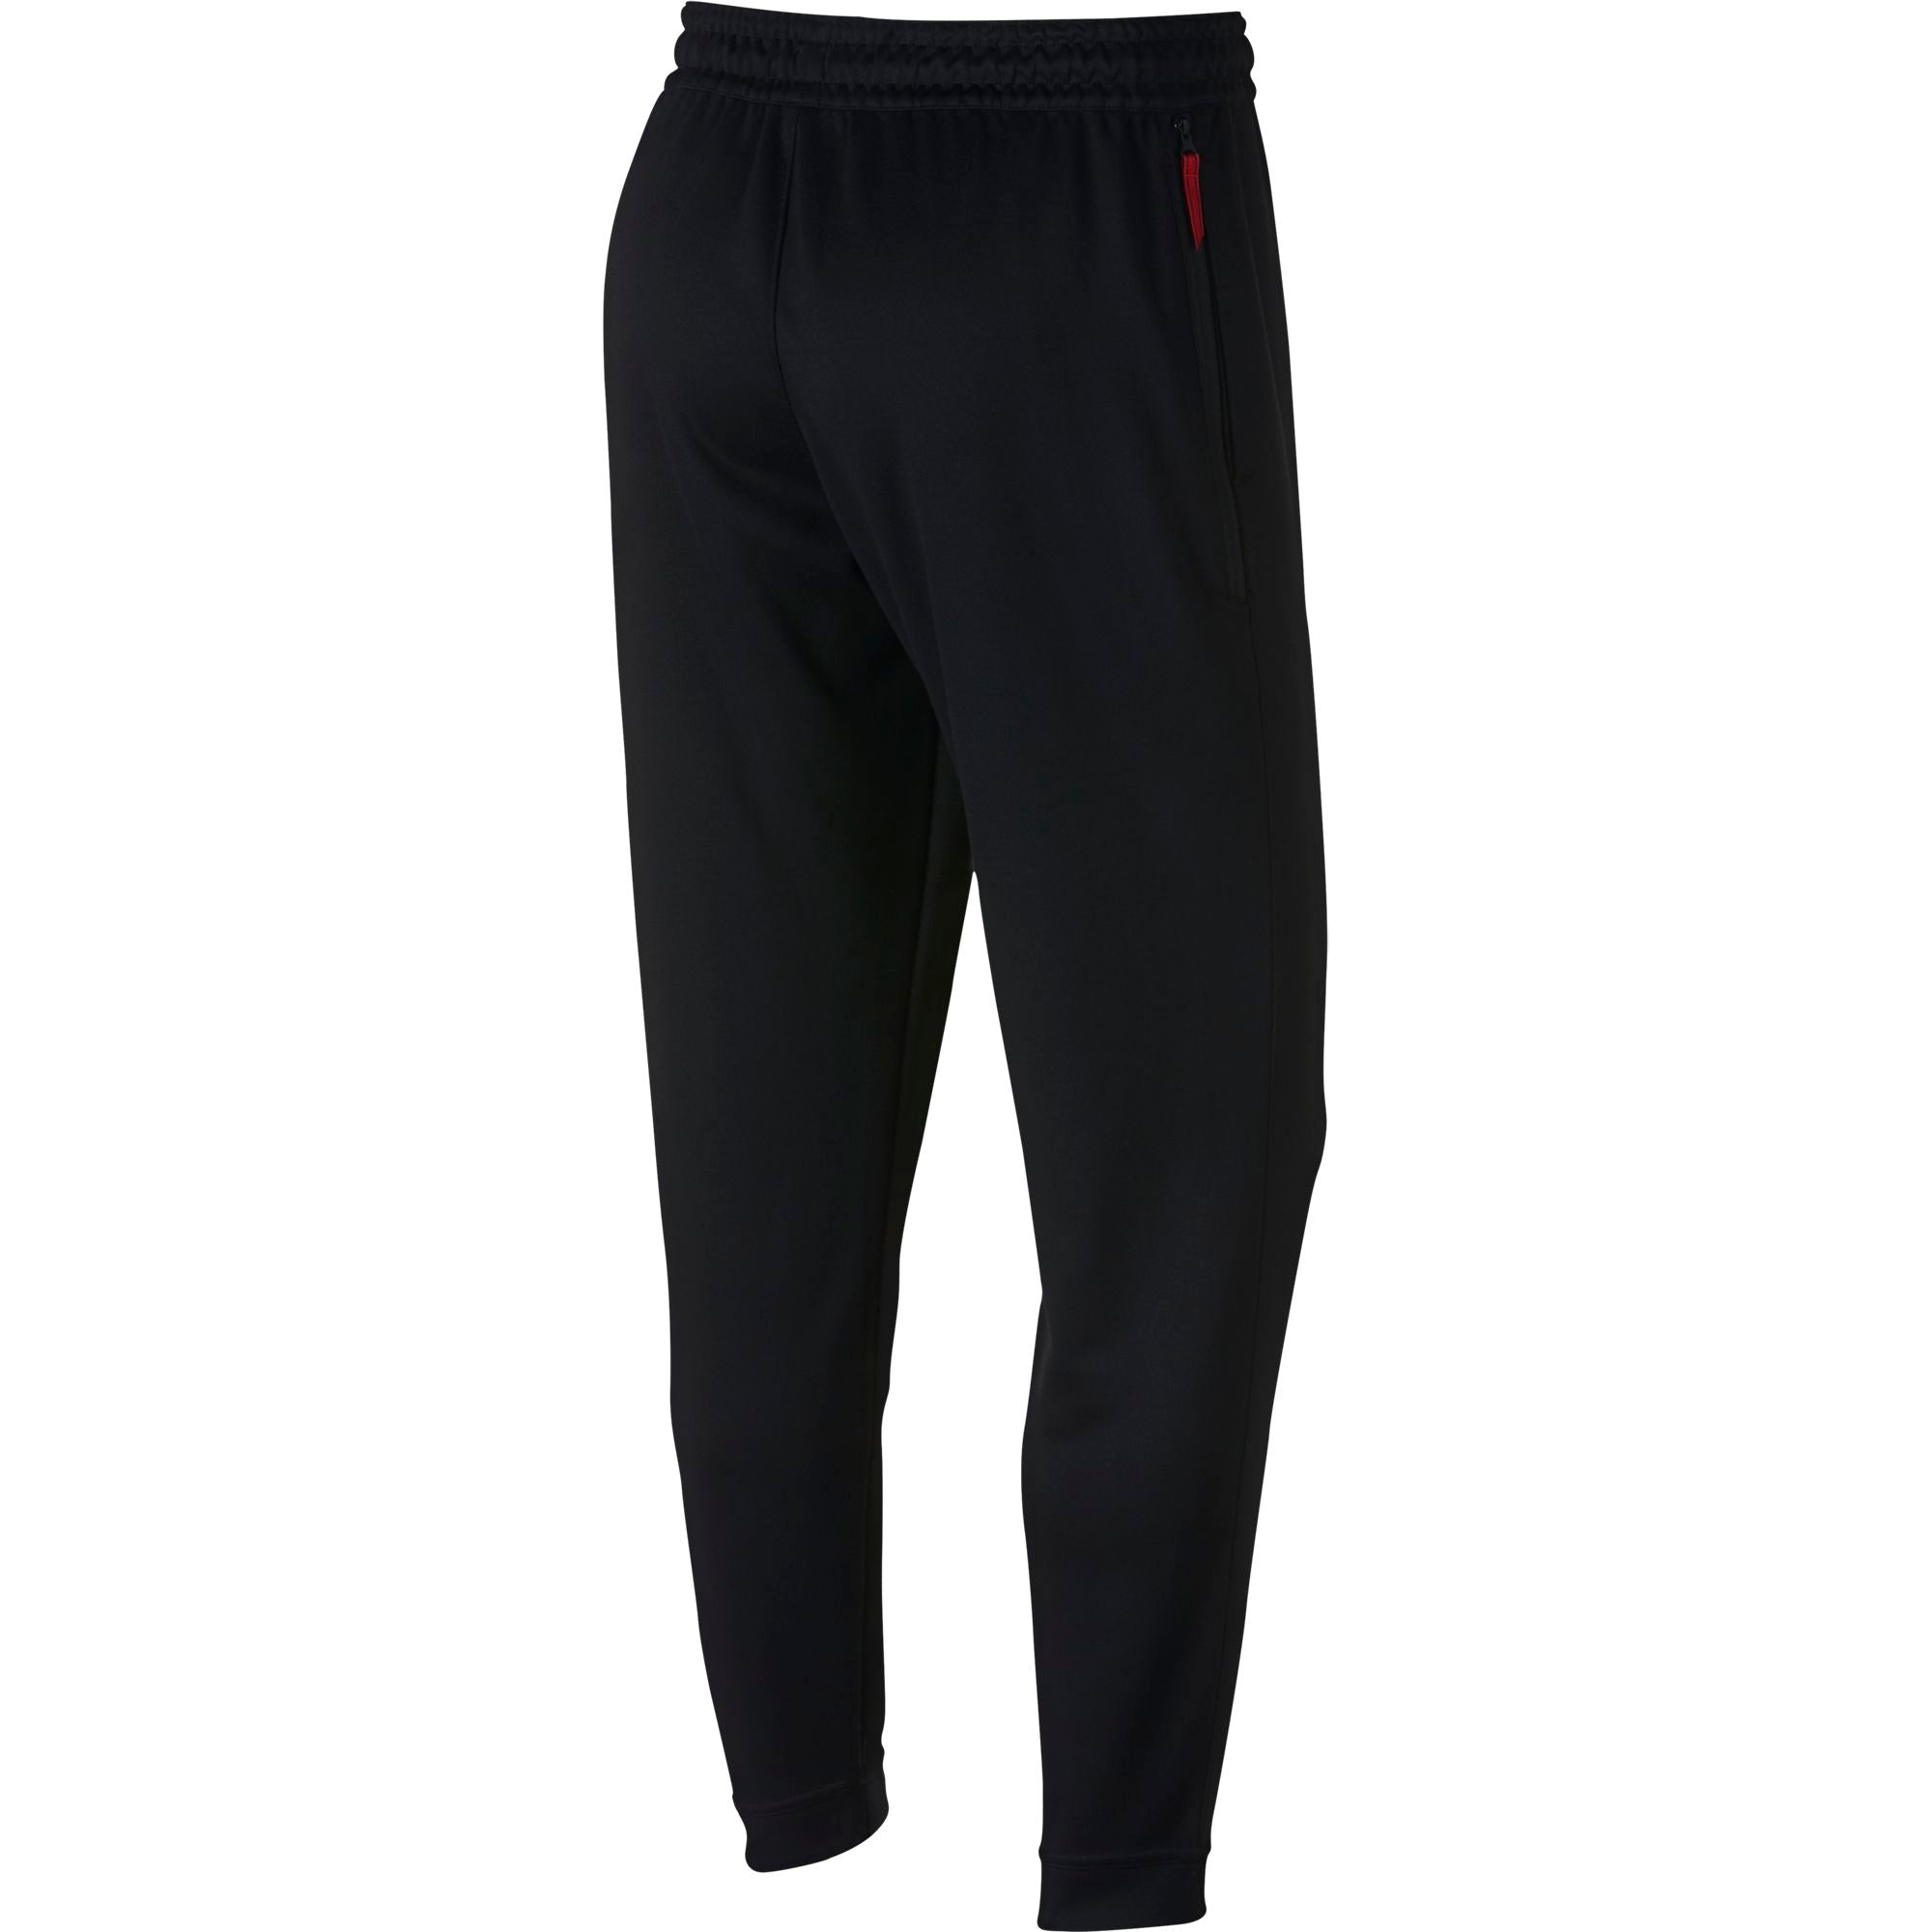 Nike Basketball Spotlight Tapered Pants - Black/White